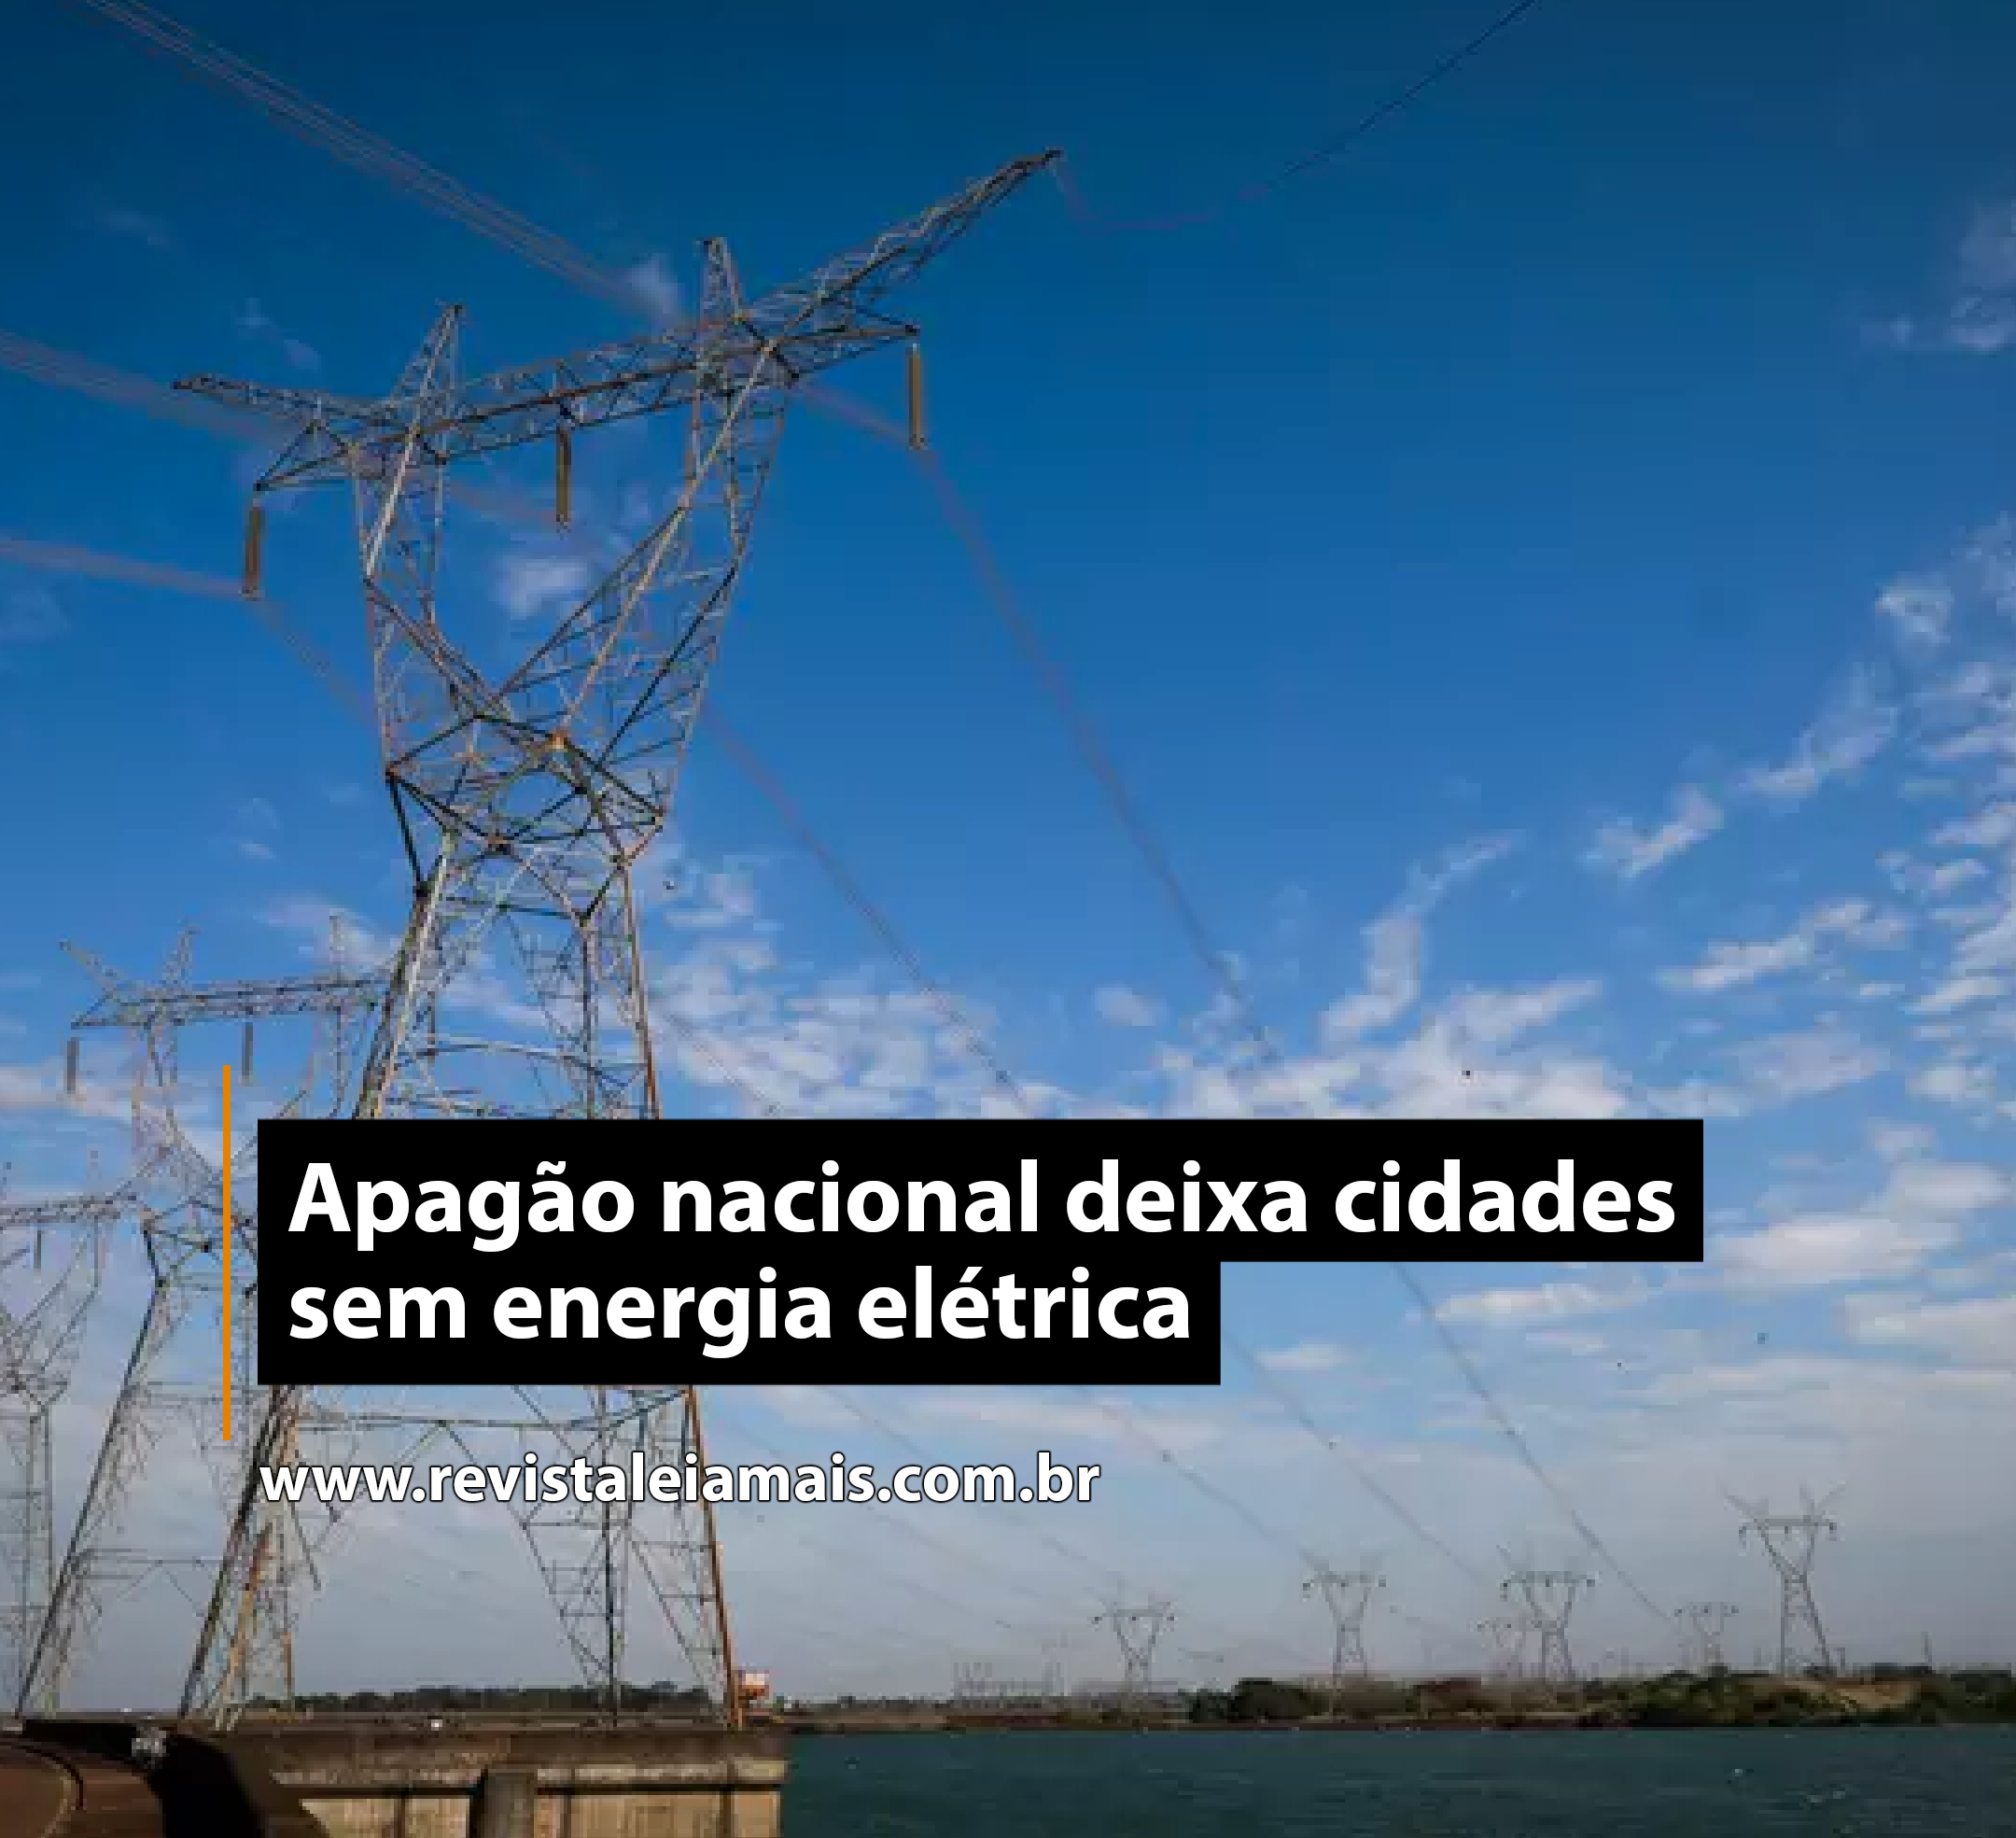 Apagão nacional deixa cidades sem energia elétrica